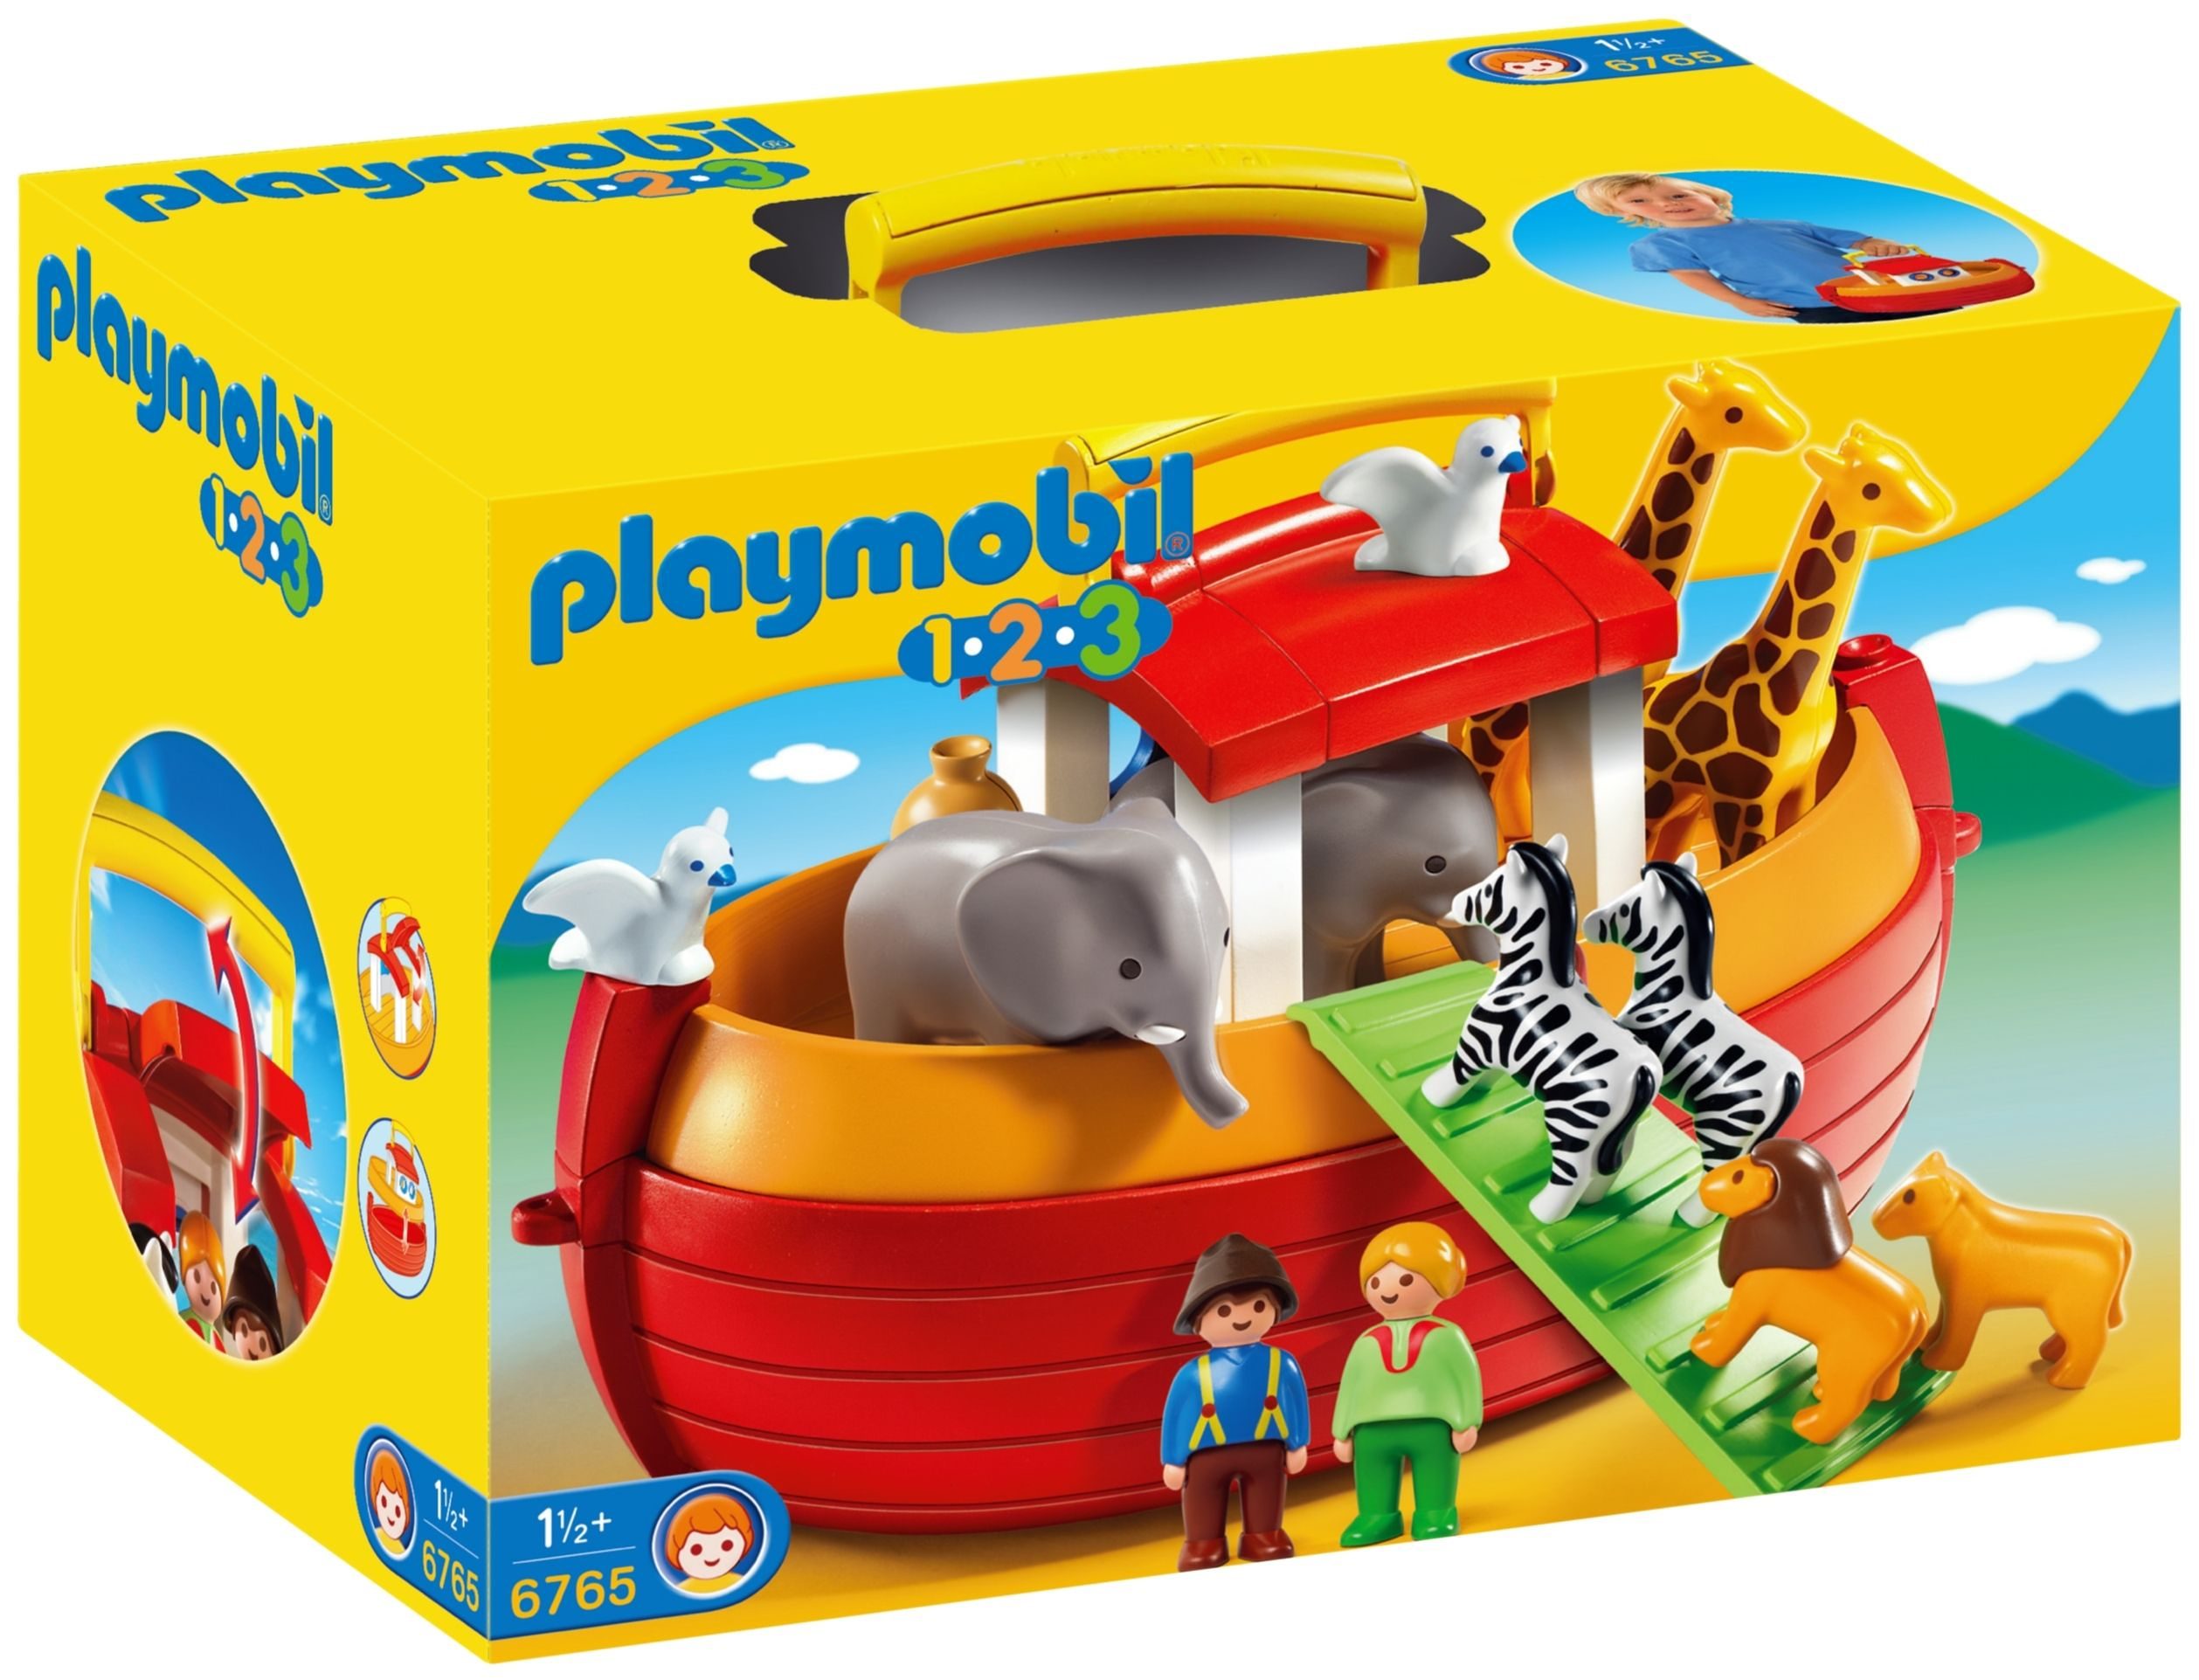 Playmobil 123 online kaufen | OTTO